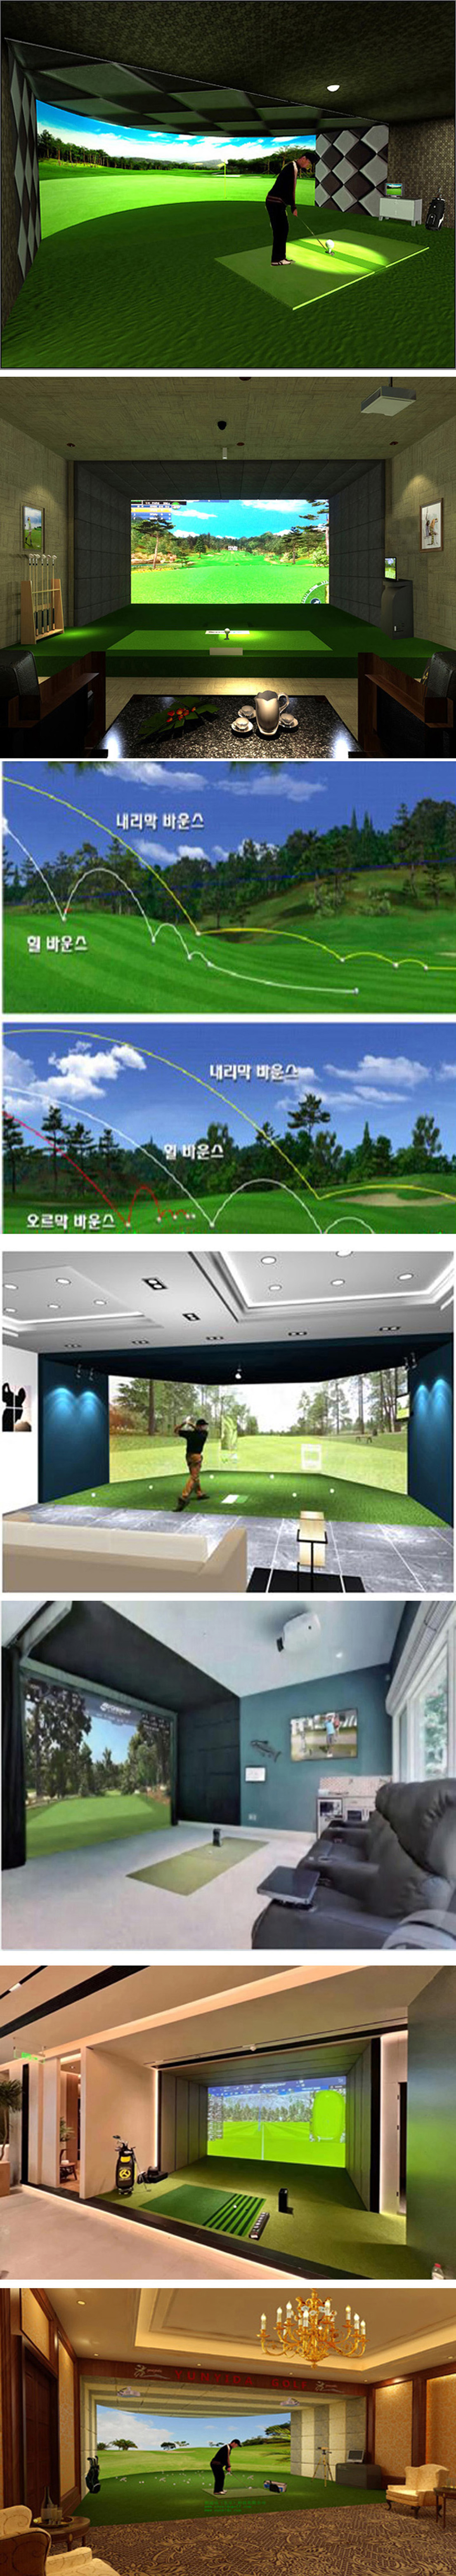 室内高尔夫练习场案例 一.jpg